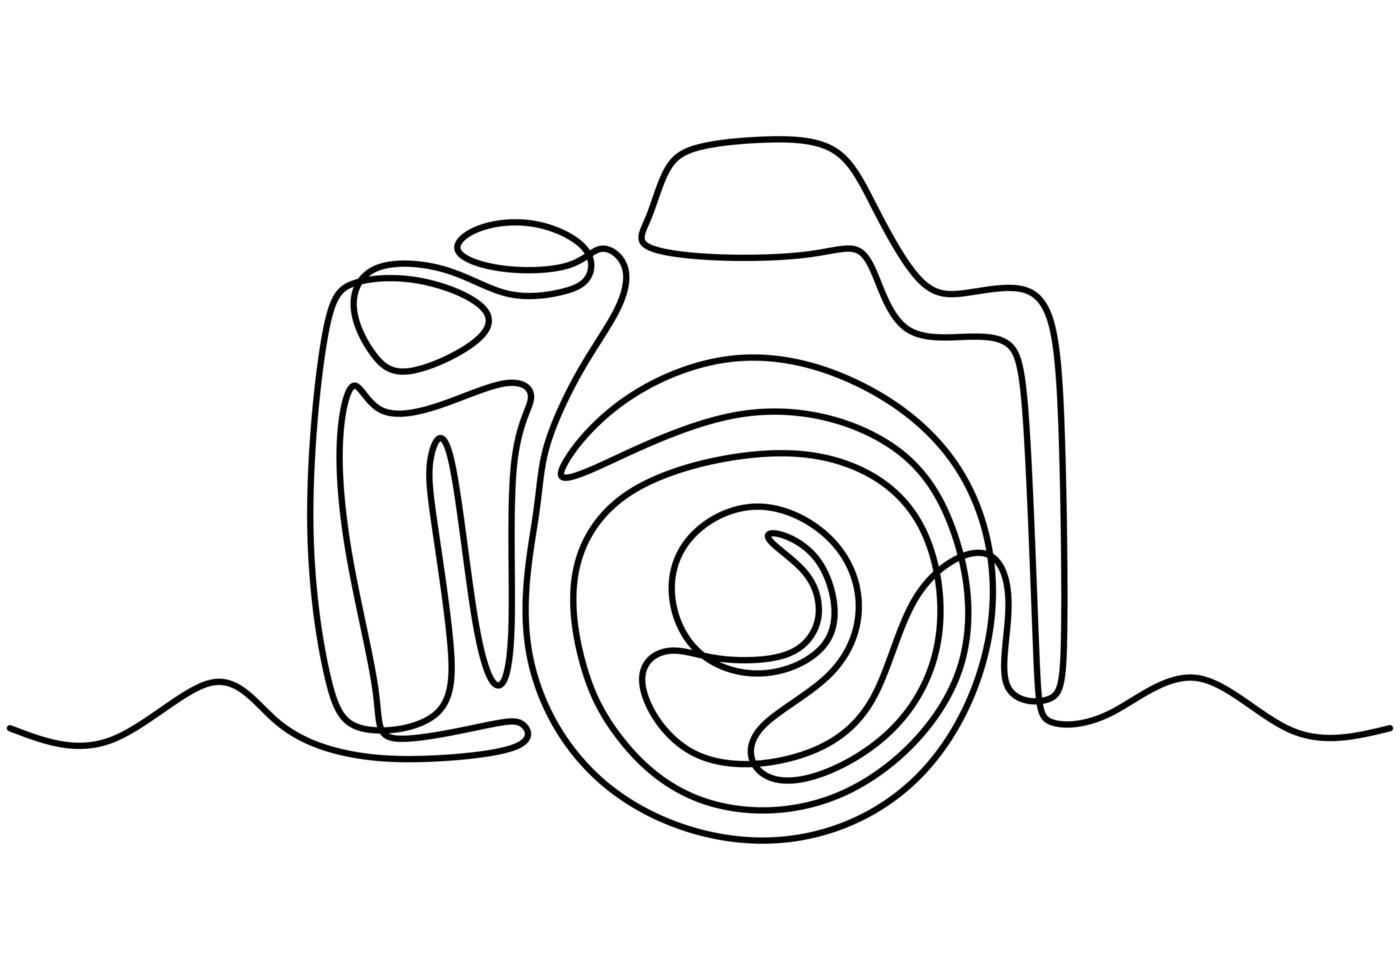 um desenho de linha do estilo linear da câmera. imagem preta isolada no fundo branco. ilustração em vetor estilo minimalismo desenhada à mão